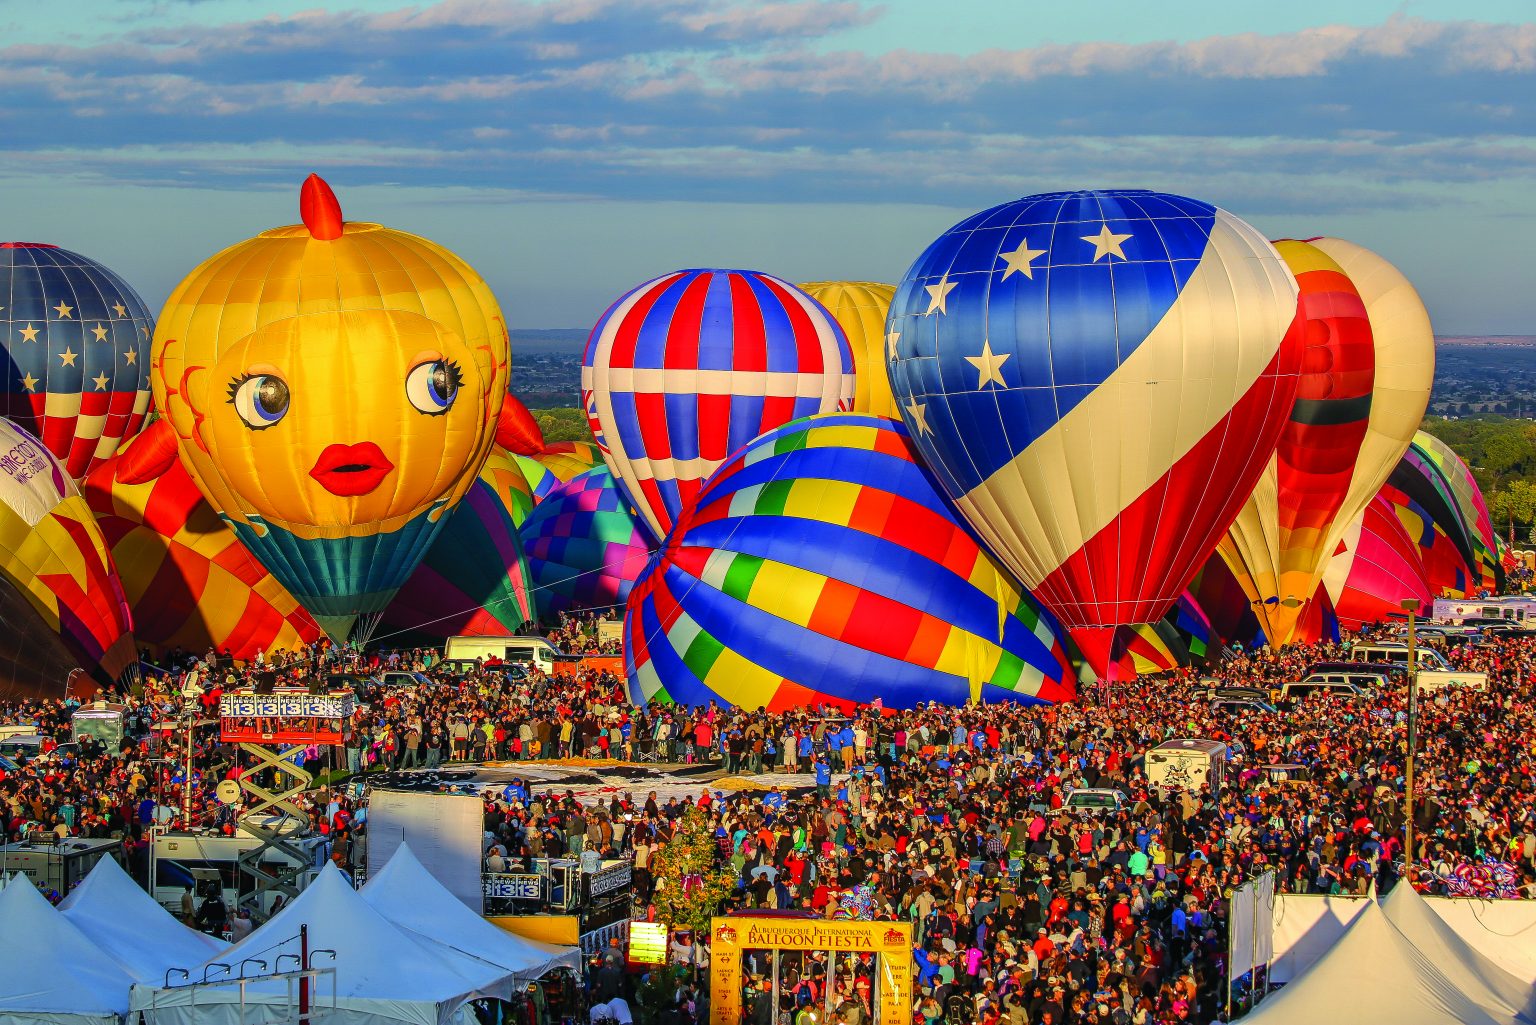 Albuquerque Balloon Fiesta, New Mexico, USA 2015.